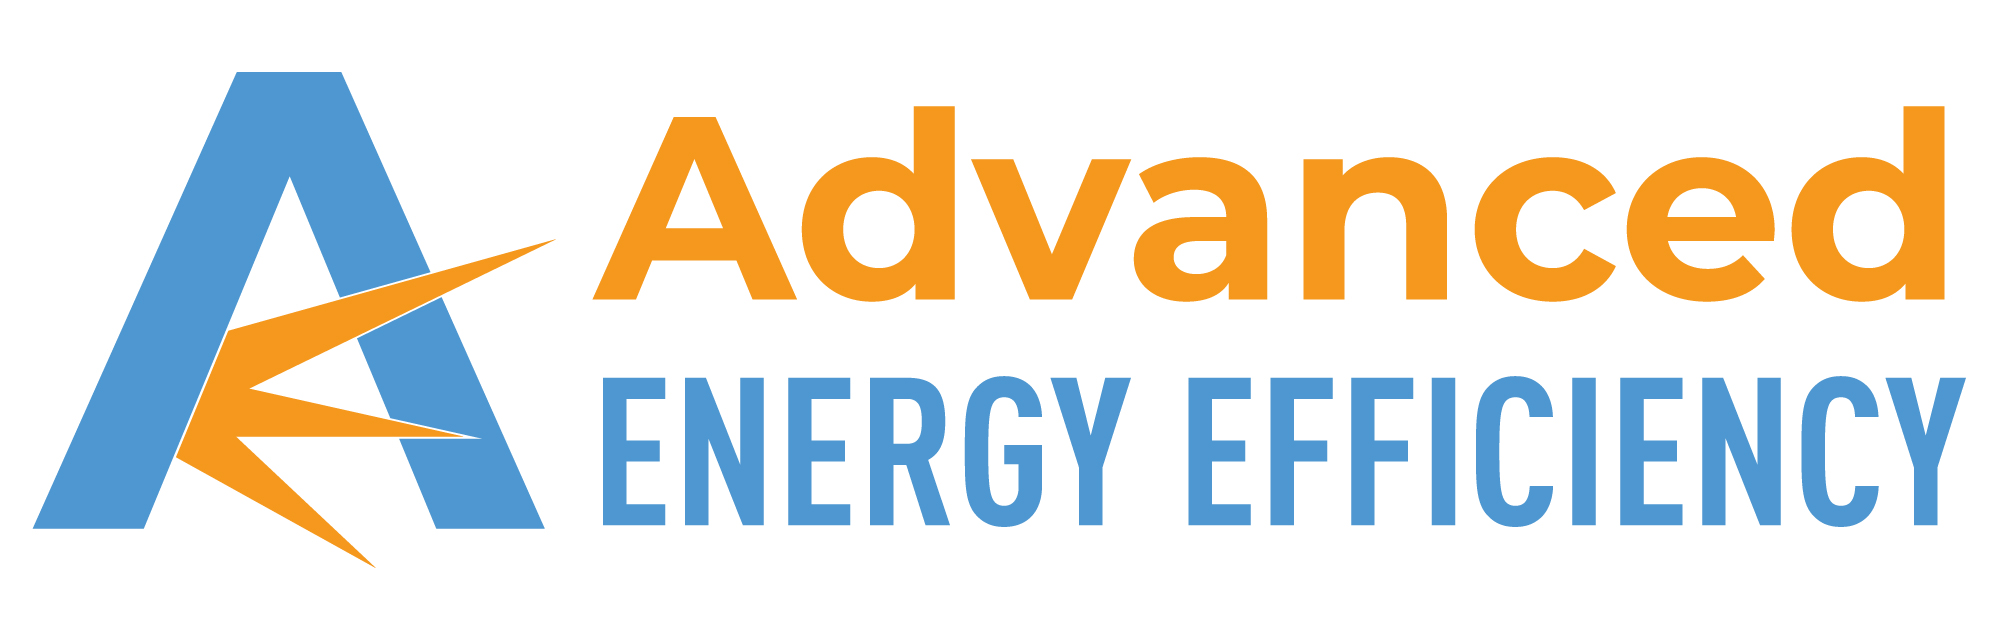 Advanced Energy Efficiency & Environmental Quality, LLC company logo